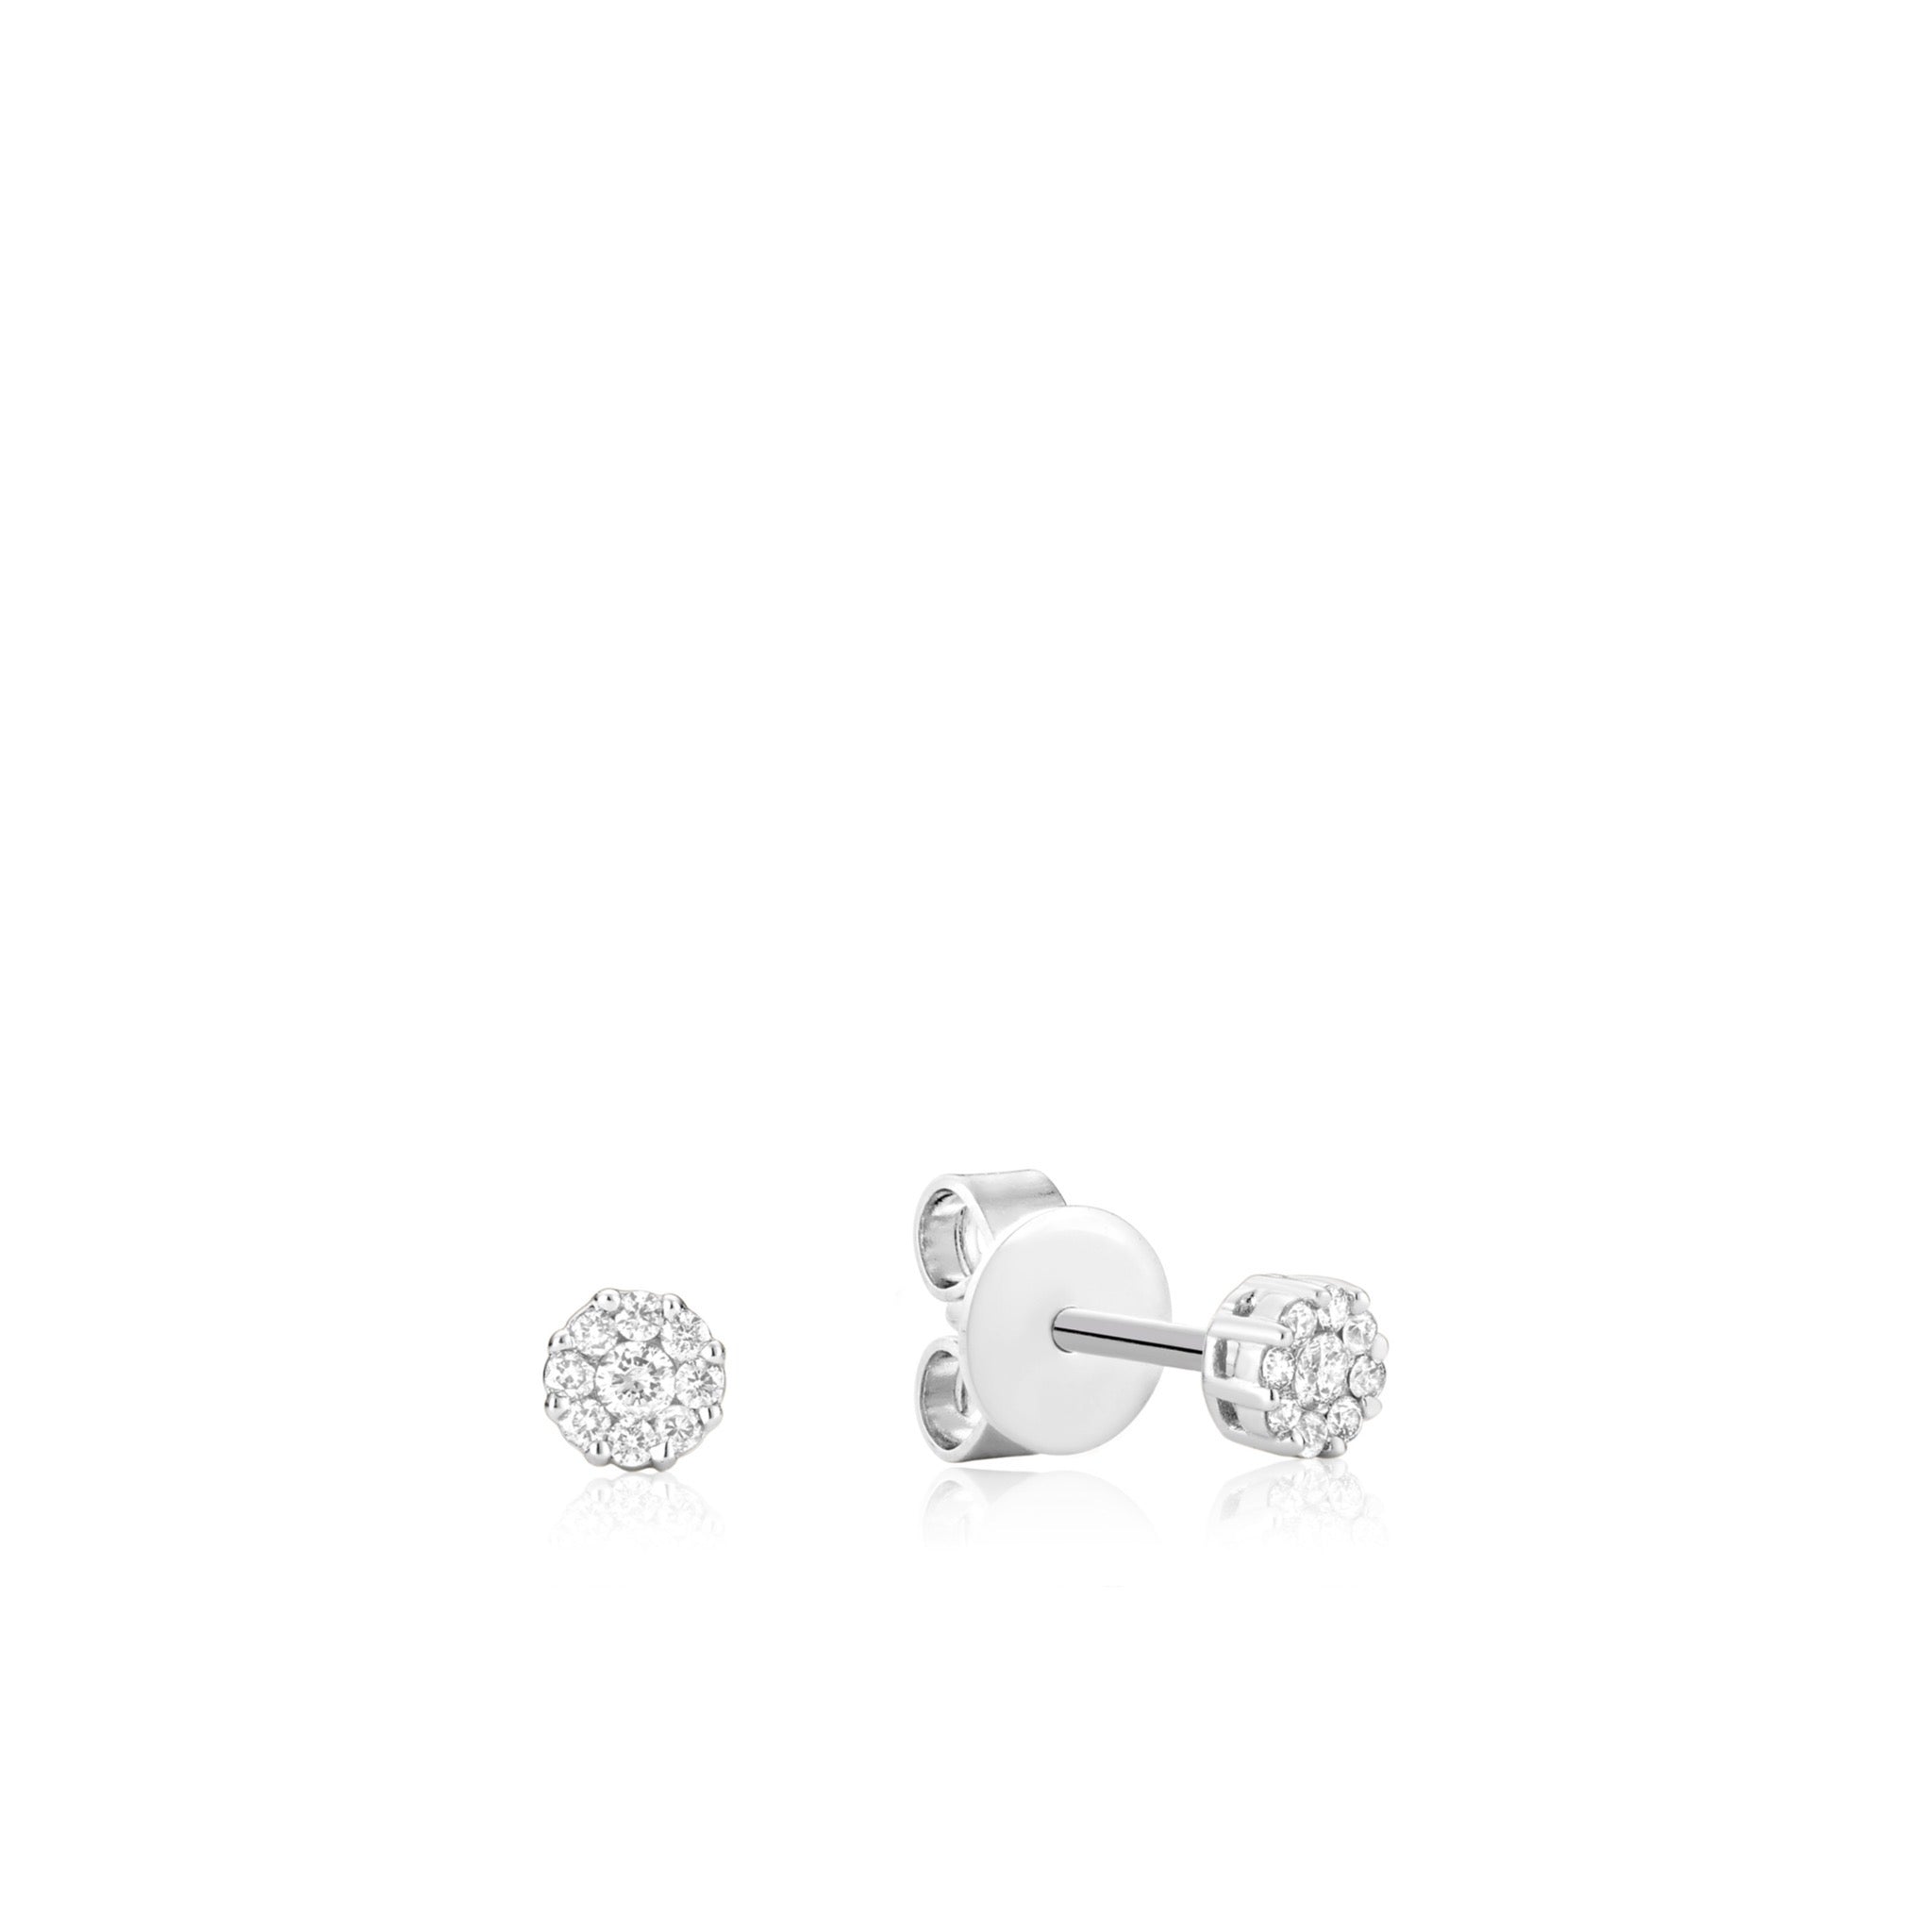 Elegant diamond cluster stud earrings set in lustrous 14kt white gold, radiating sophistication and timeless charm.